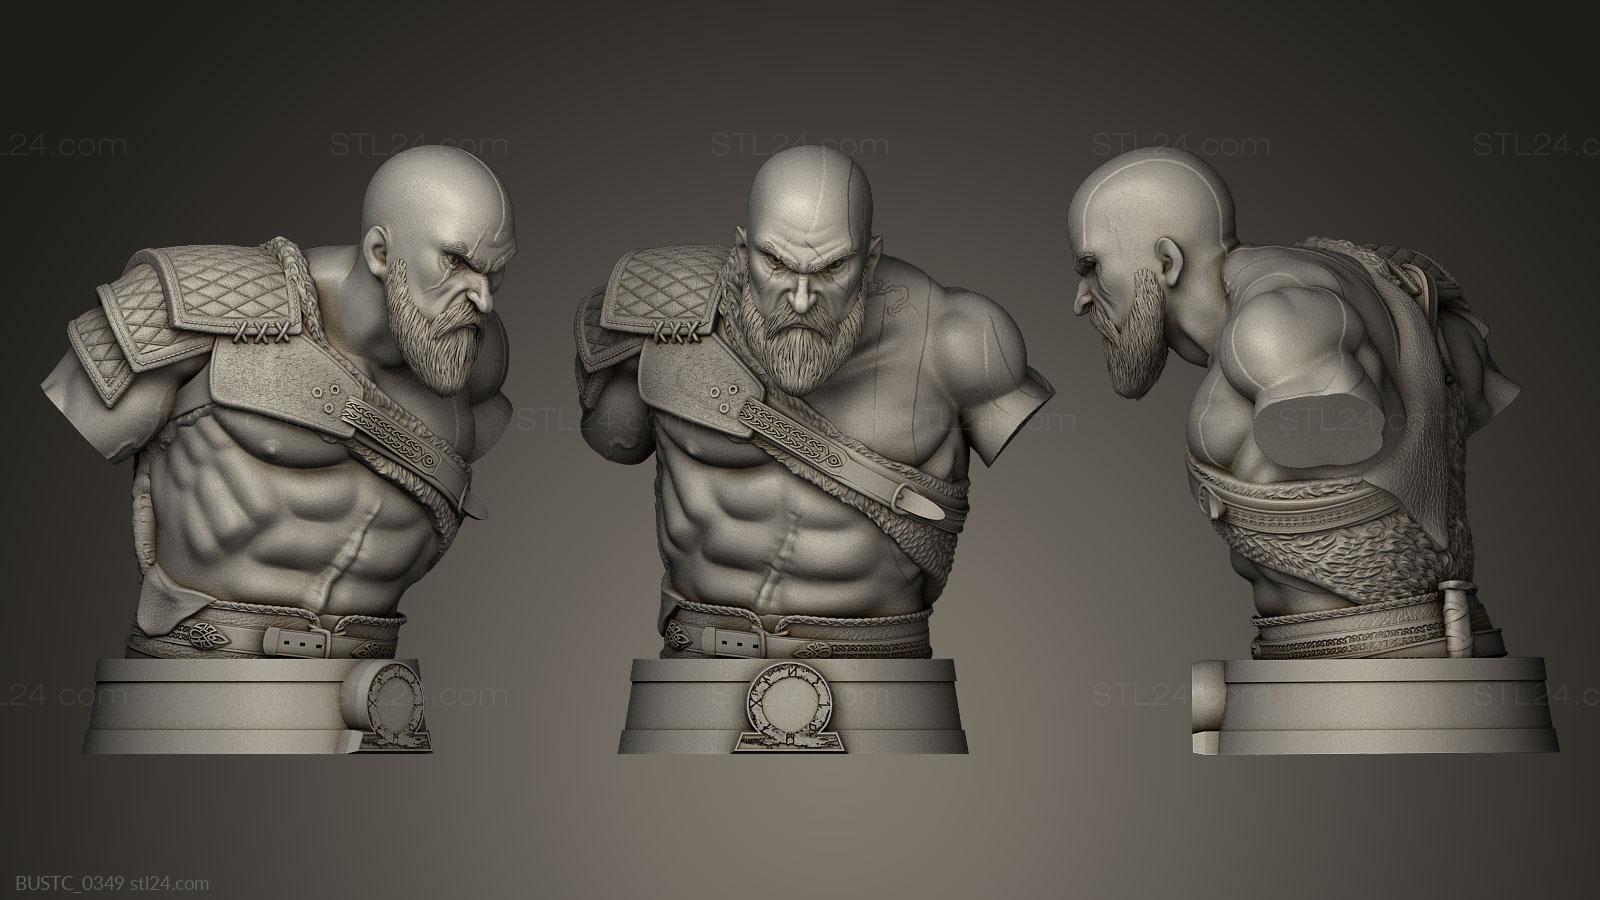 Бюсты и барельефы известных личностей (Кратос бог войны, BUSTC_0349) 3D модель для ЧПУ станка